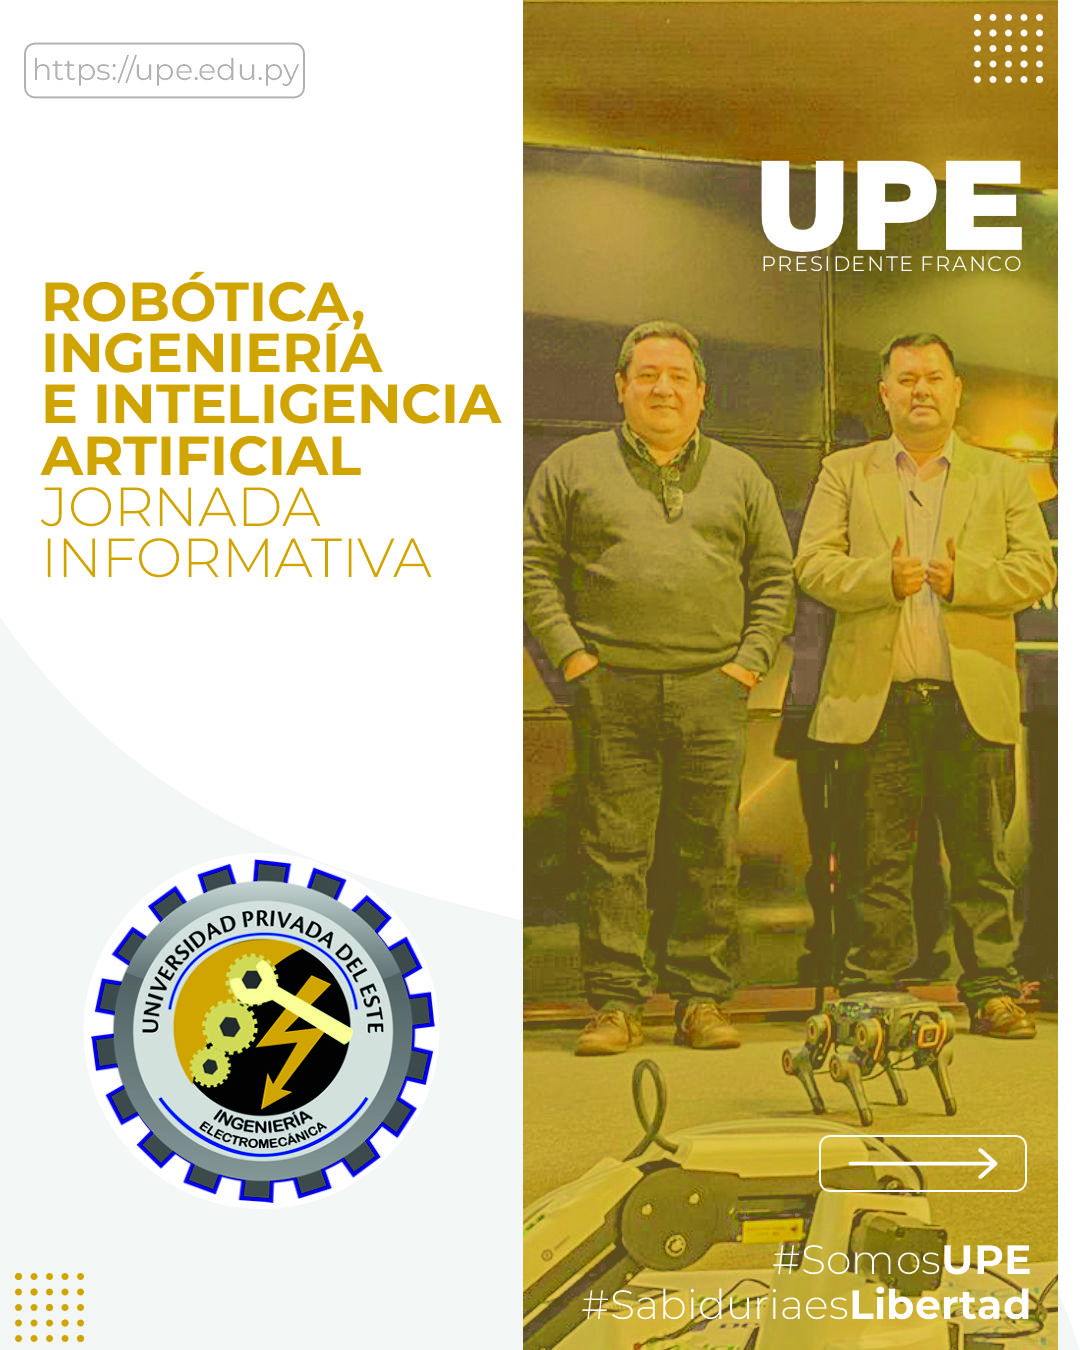 Robótica, Ingeniería e Inteligencia Artificial - Jornada Informativa en la UPE